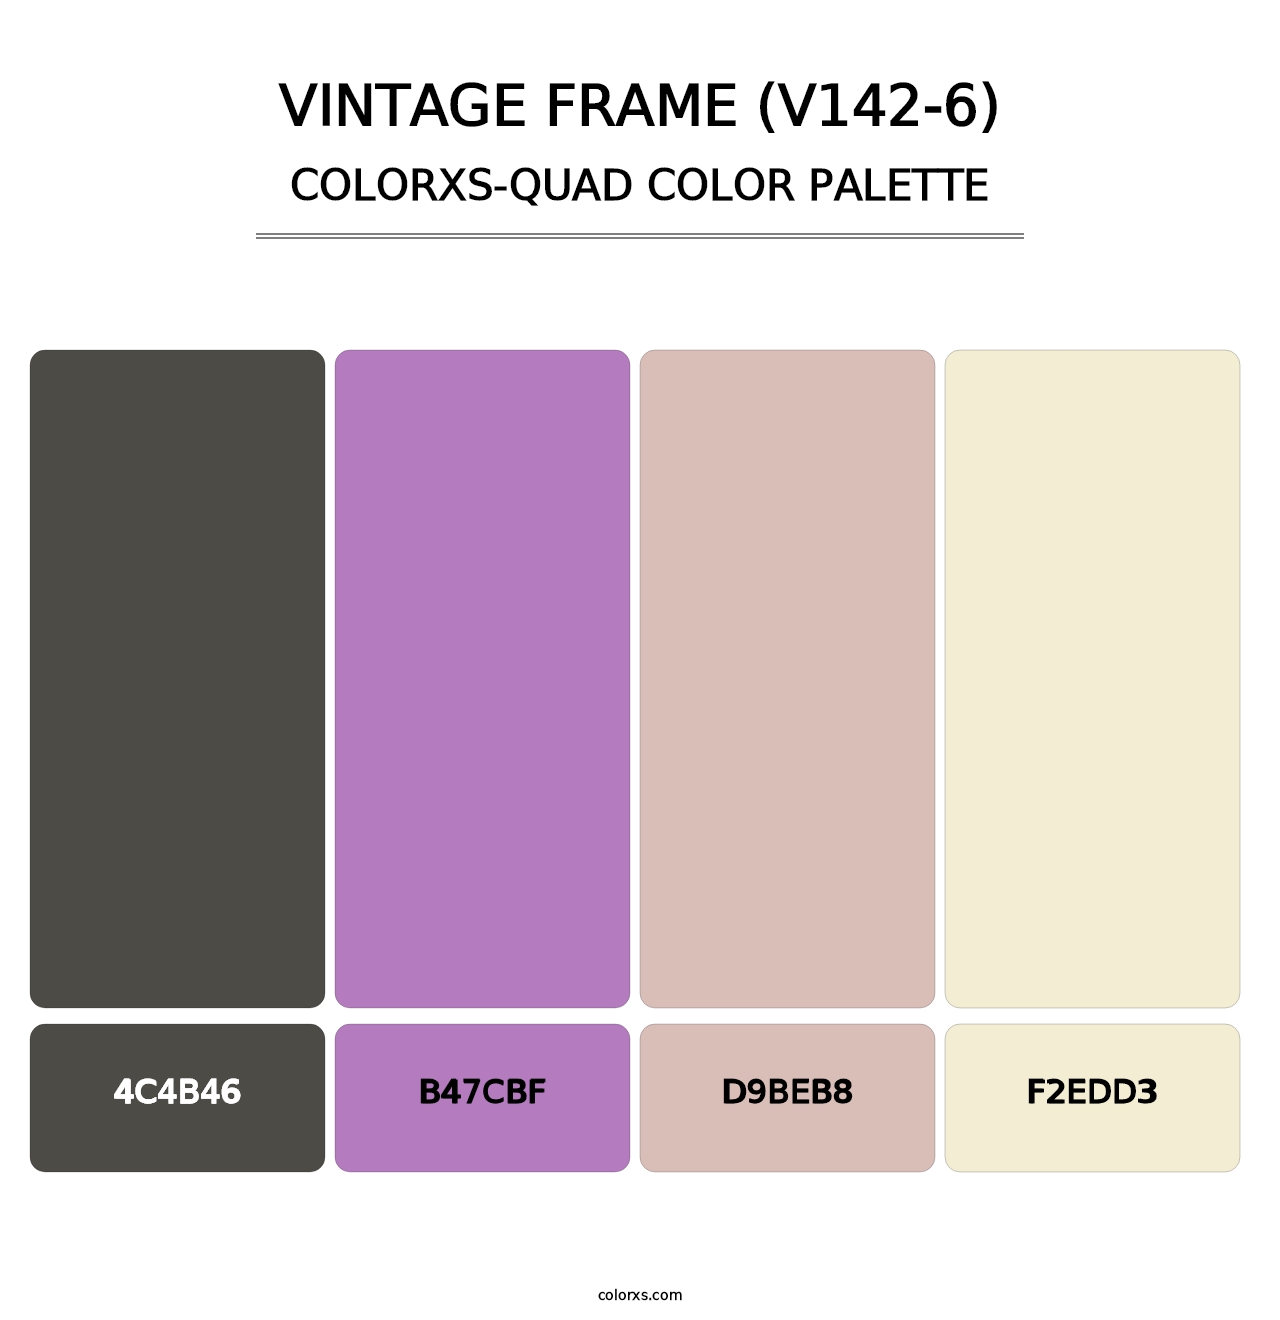 Vintage Frame (V142-6) - Colorxs Quad Palette